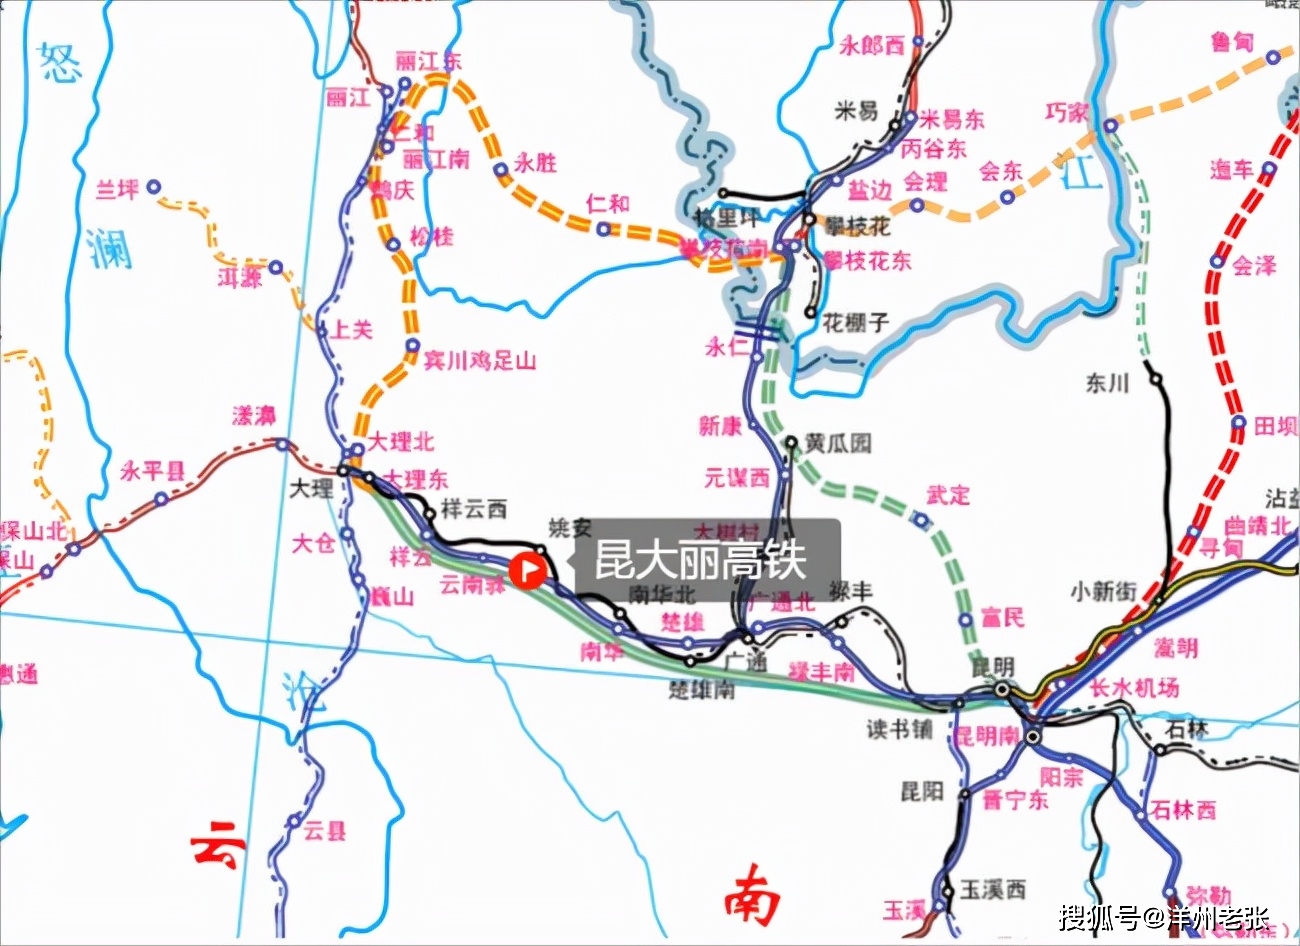 原创横贯滇西云南将添一条时速350公里高铁沿线4市经过你家乡吗